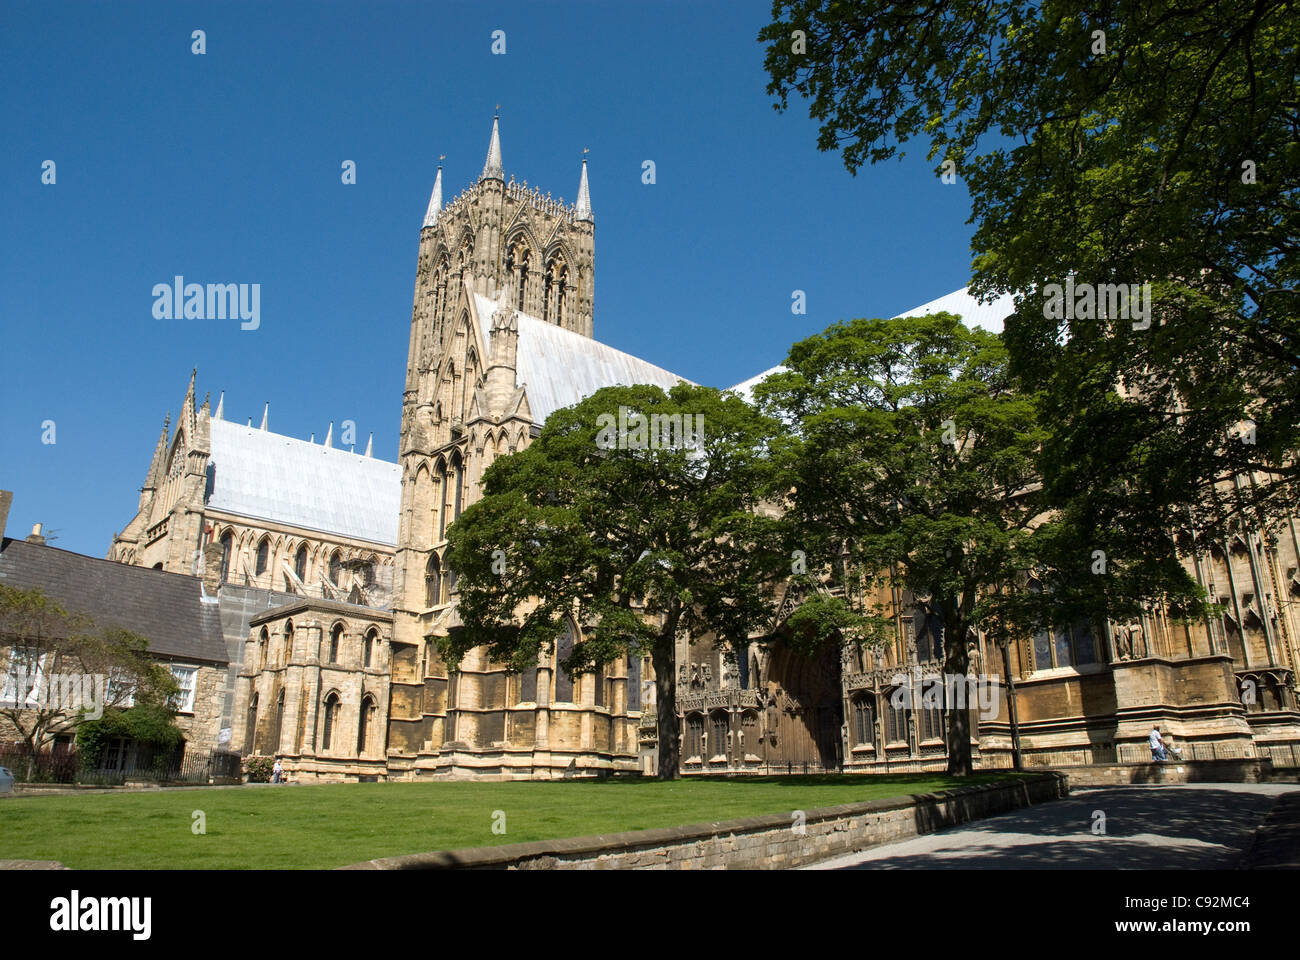 La Catedral de Lincoln es una enorme catedral gótica en el centro de la ciudad de Lincoln. Foto de stock